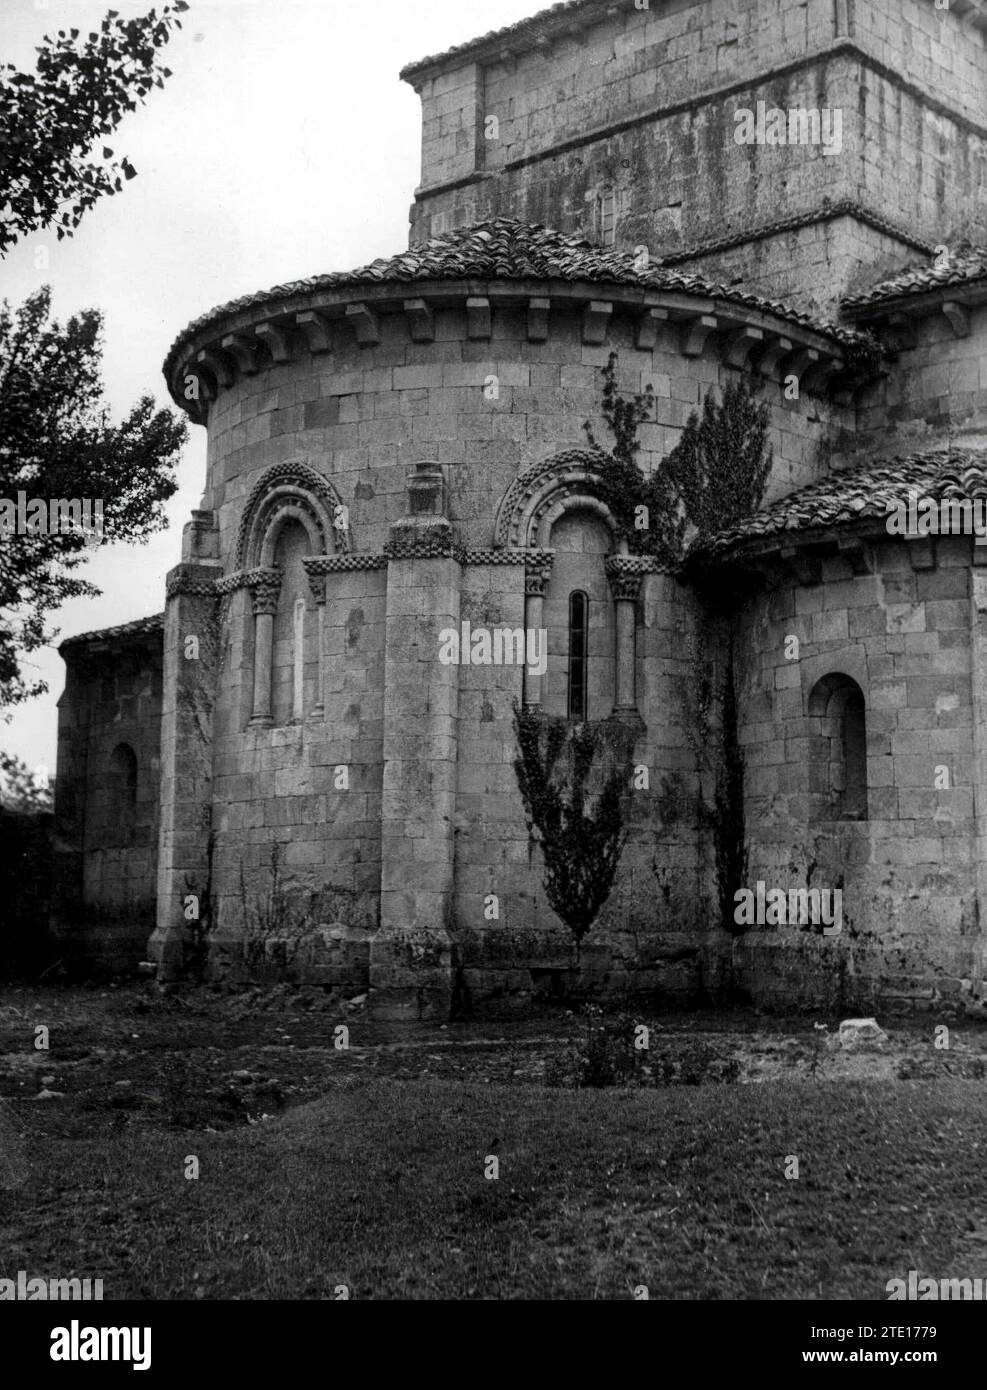 12/31/1959. Romanesque apse of the Olmos de Ojeda church. Credit: Album / Archivo ABC / Marques De Santa María Del Villar Stock Photo